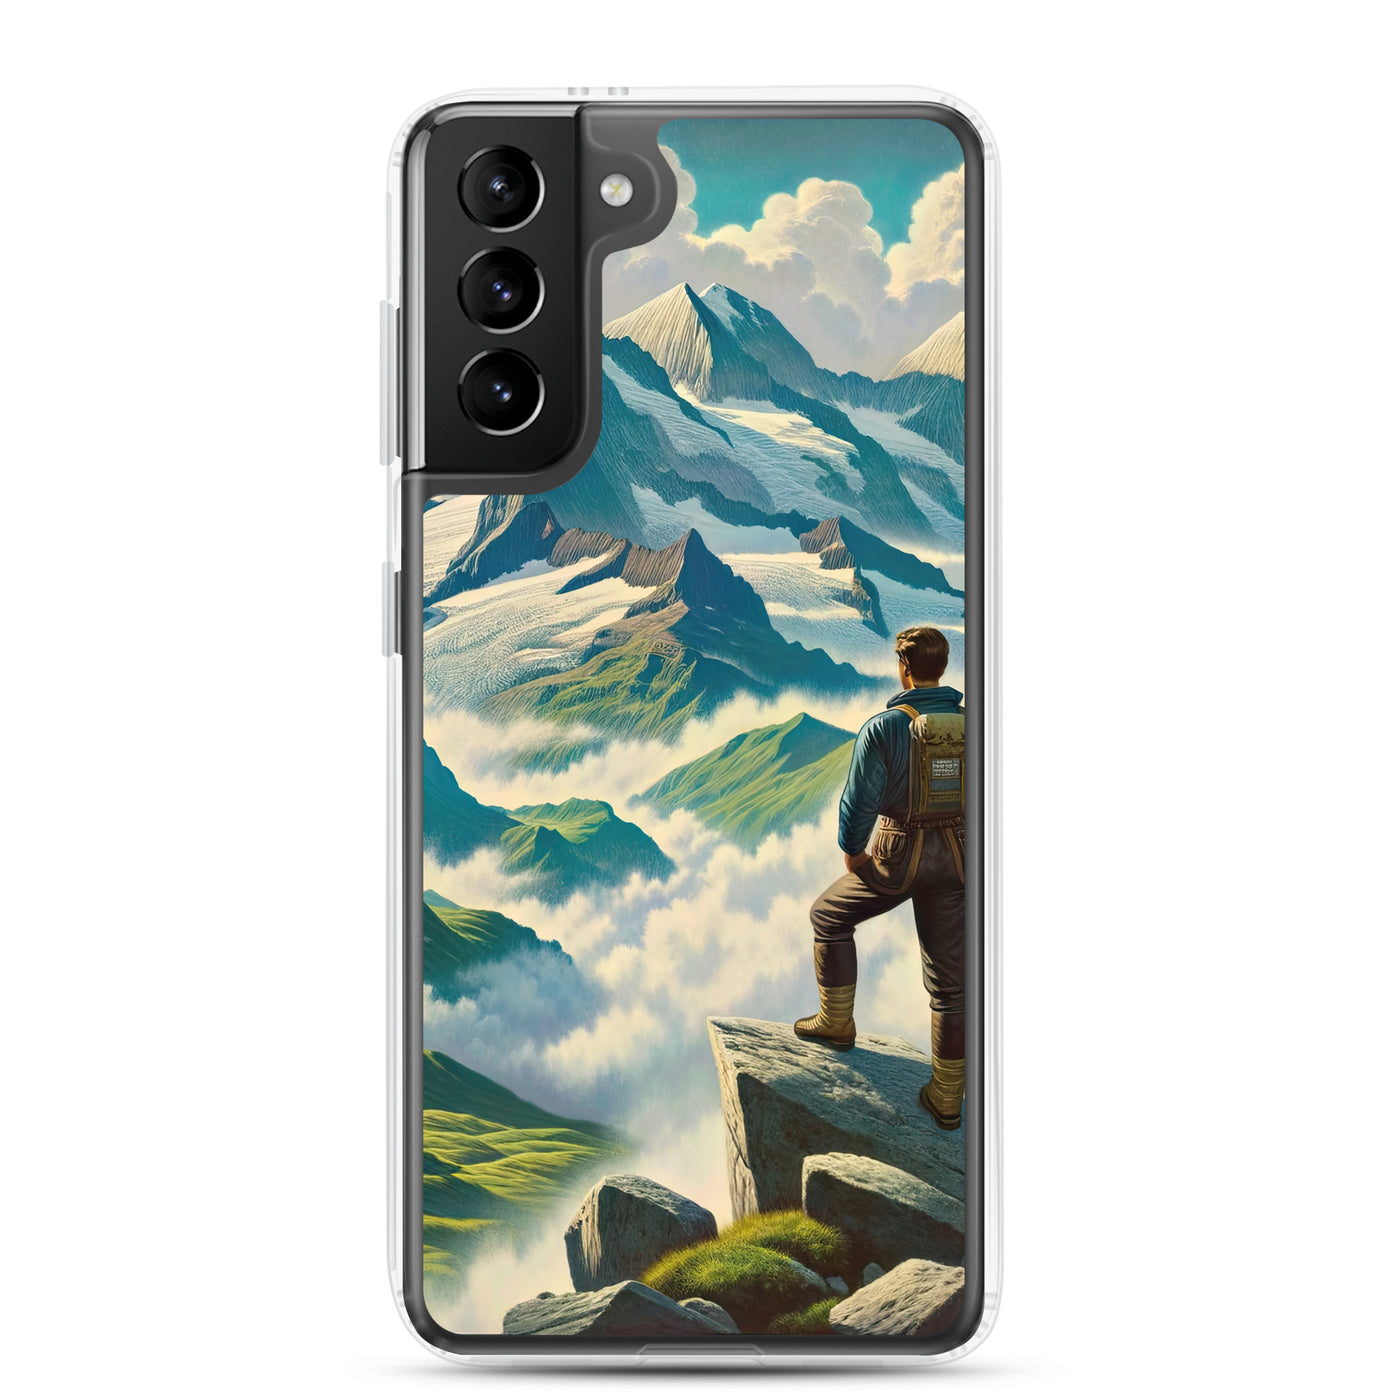 Panoramablick der Alpen mit Wanderer auf einem Hügel und schroffen Gipfeln - Samsung Schutzhülle (durchsichtig) wandern xxx yyy zzz Samsung Galaxy S21 Plus